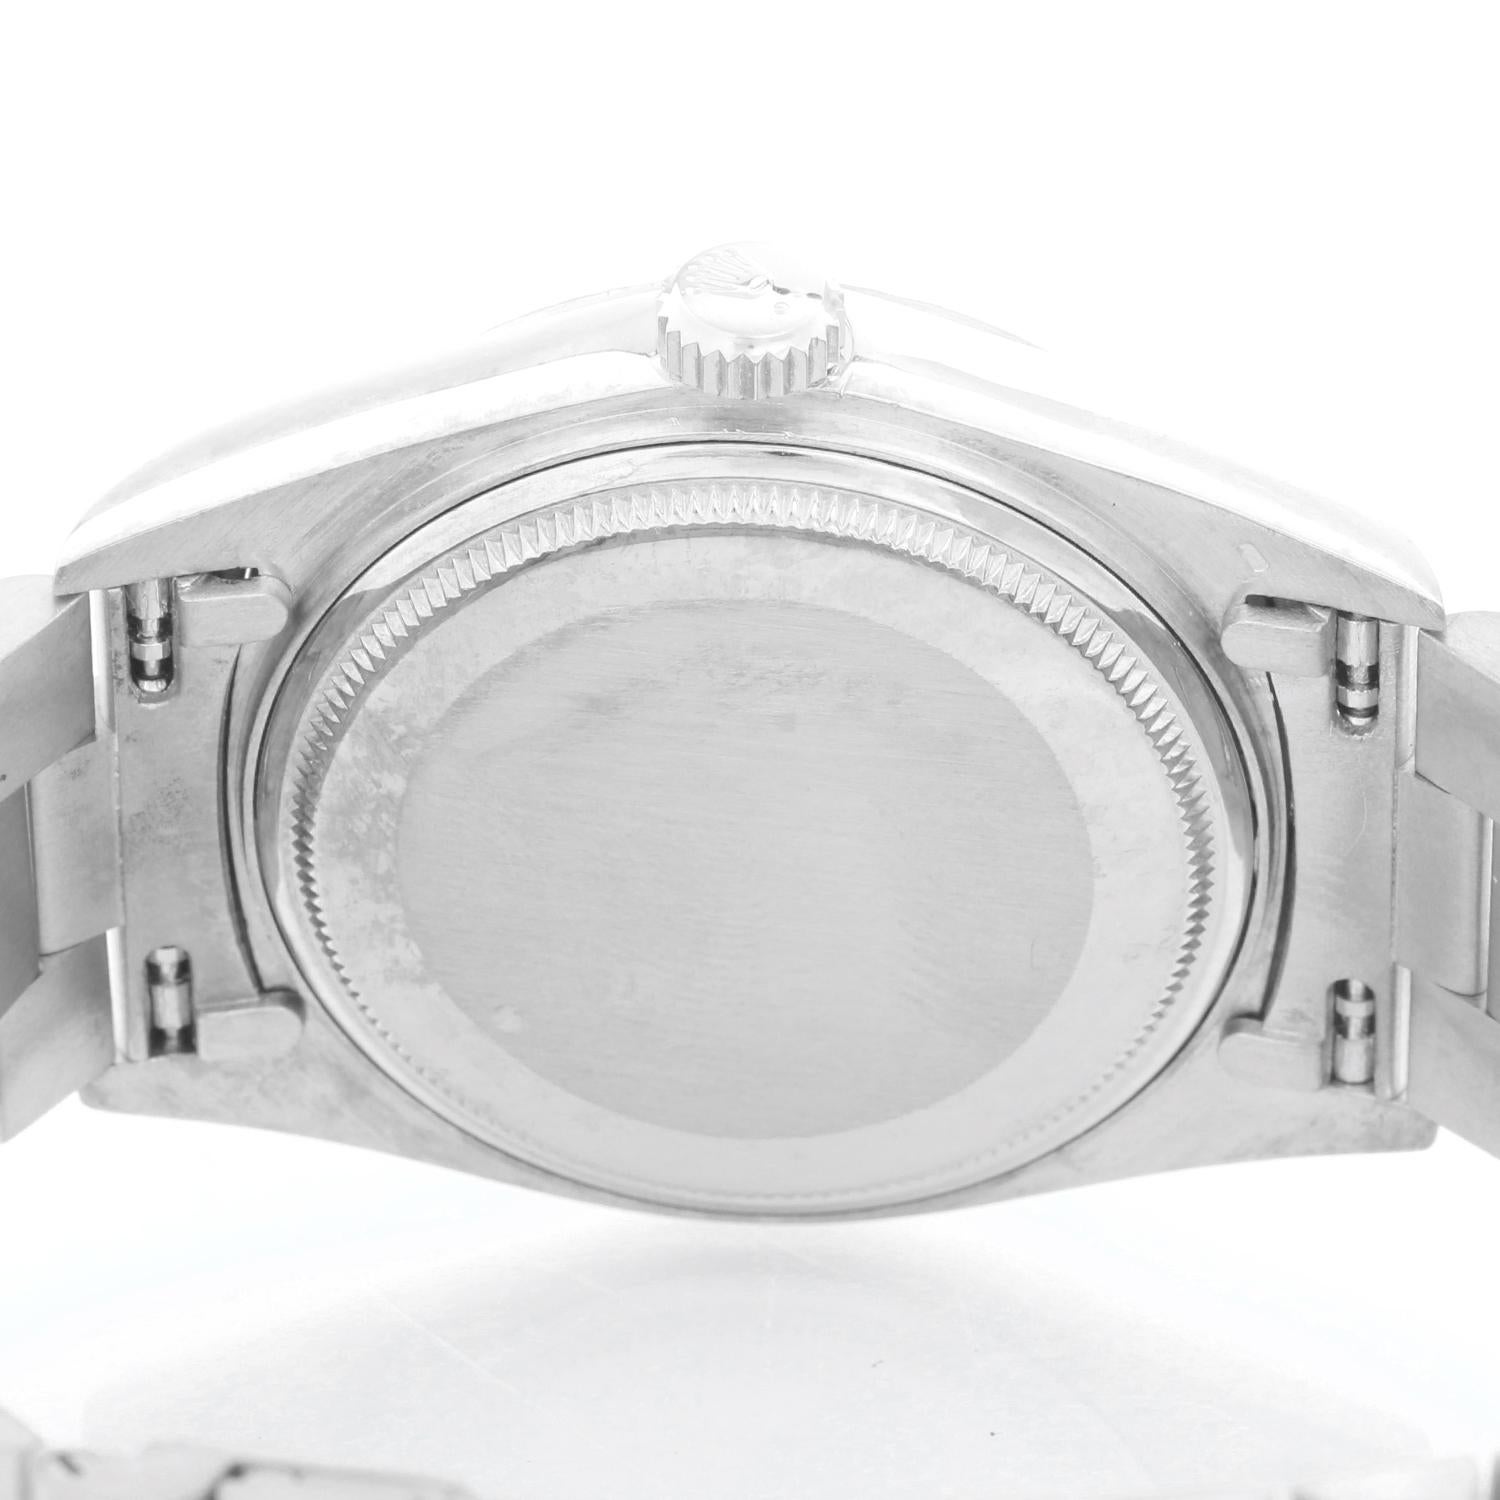 Collectible Men's Rolex President Day-Date 18 Karat White Gold Watch 18038 1